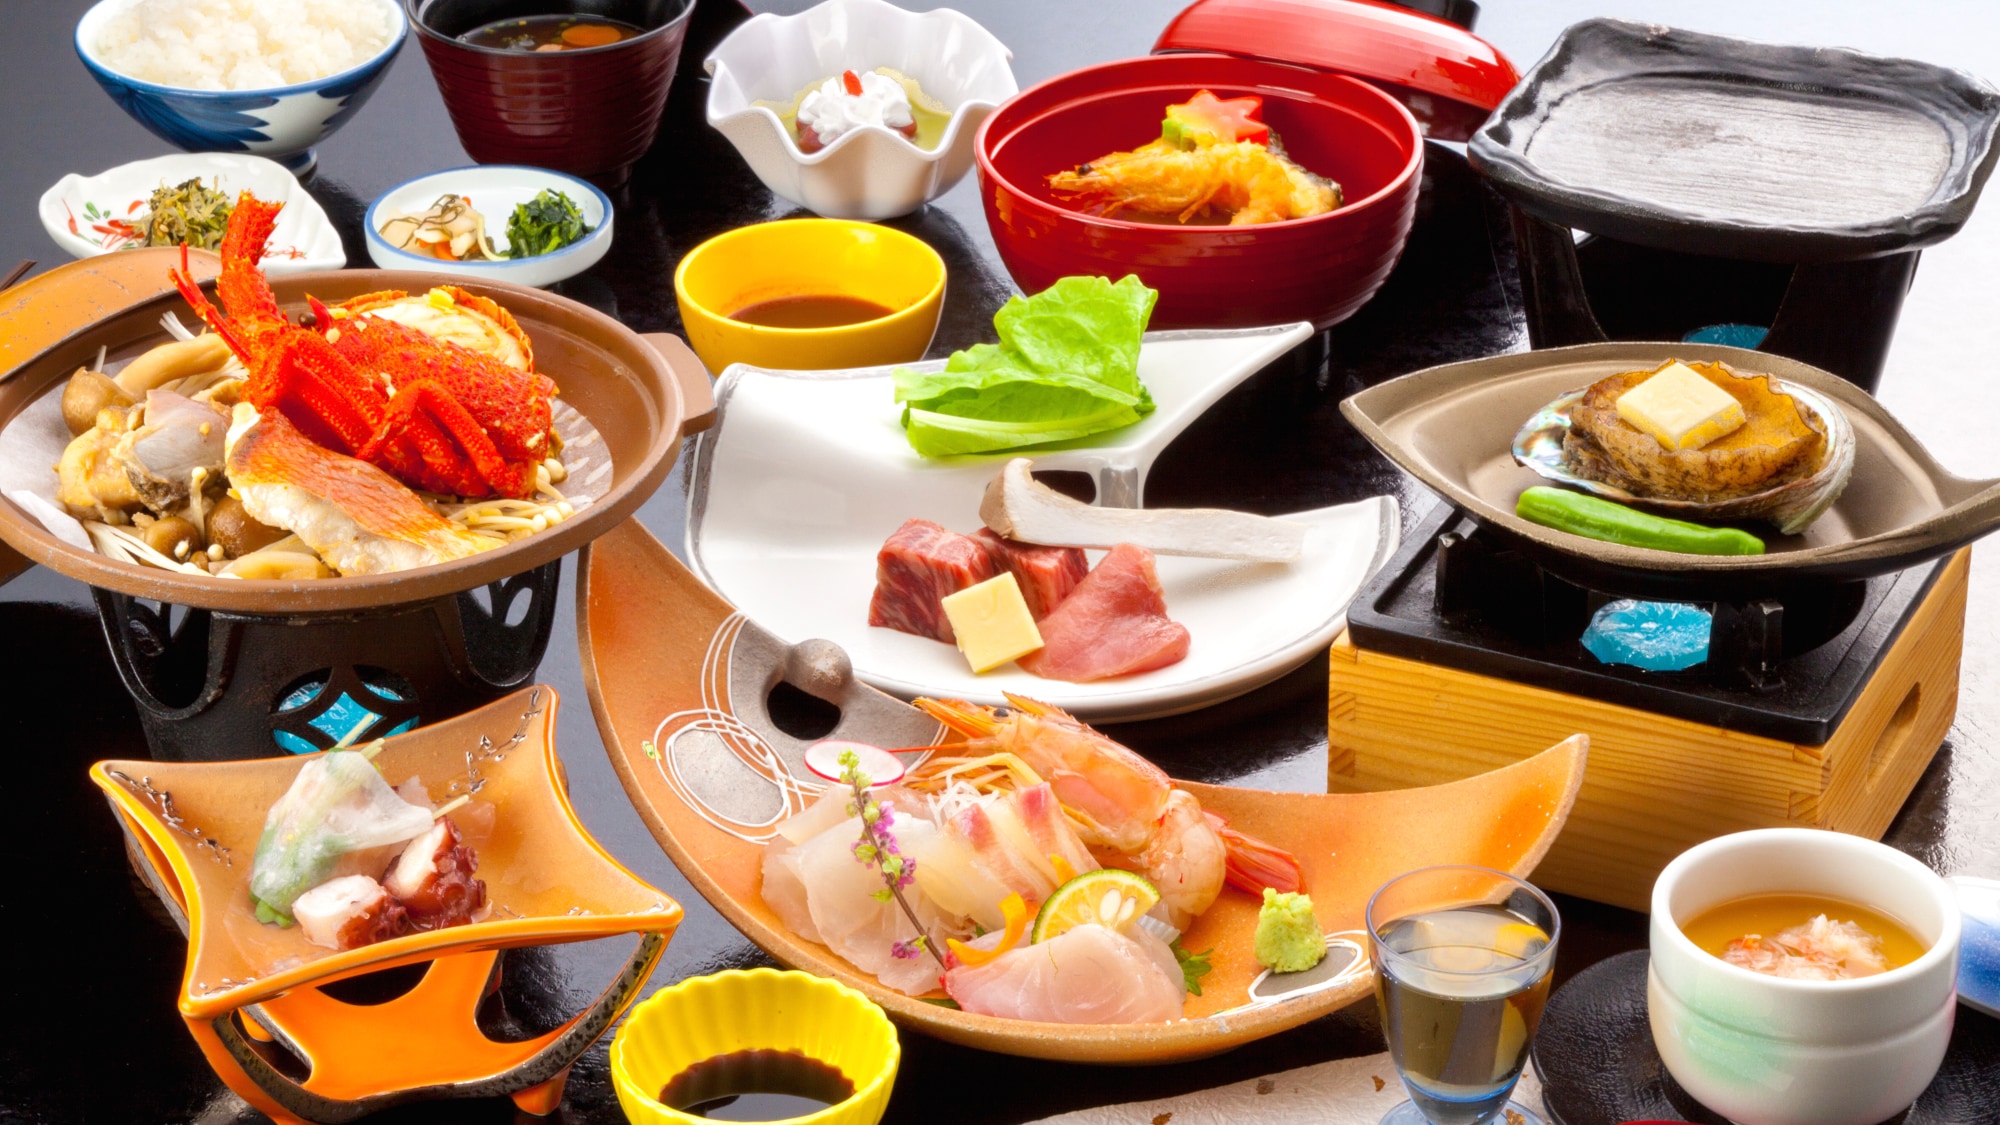 “Hanagatami Gozen” 使用廚師精心挑選的時令食材烹製的特別懷石懷石料理，採用日本料理，充分利用食材。